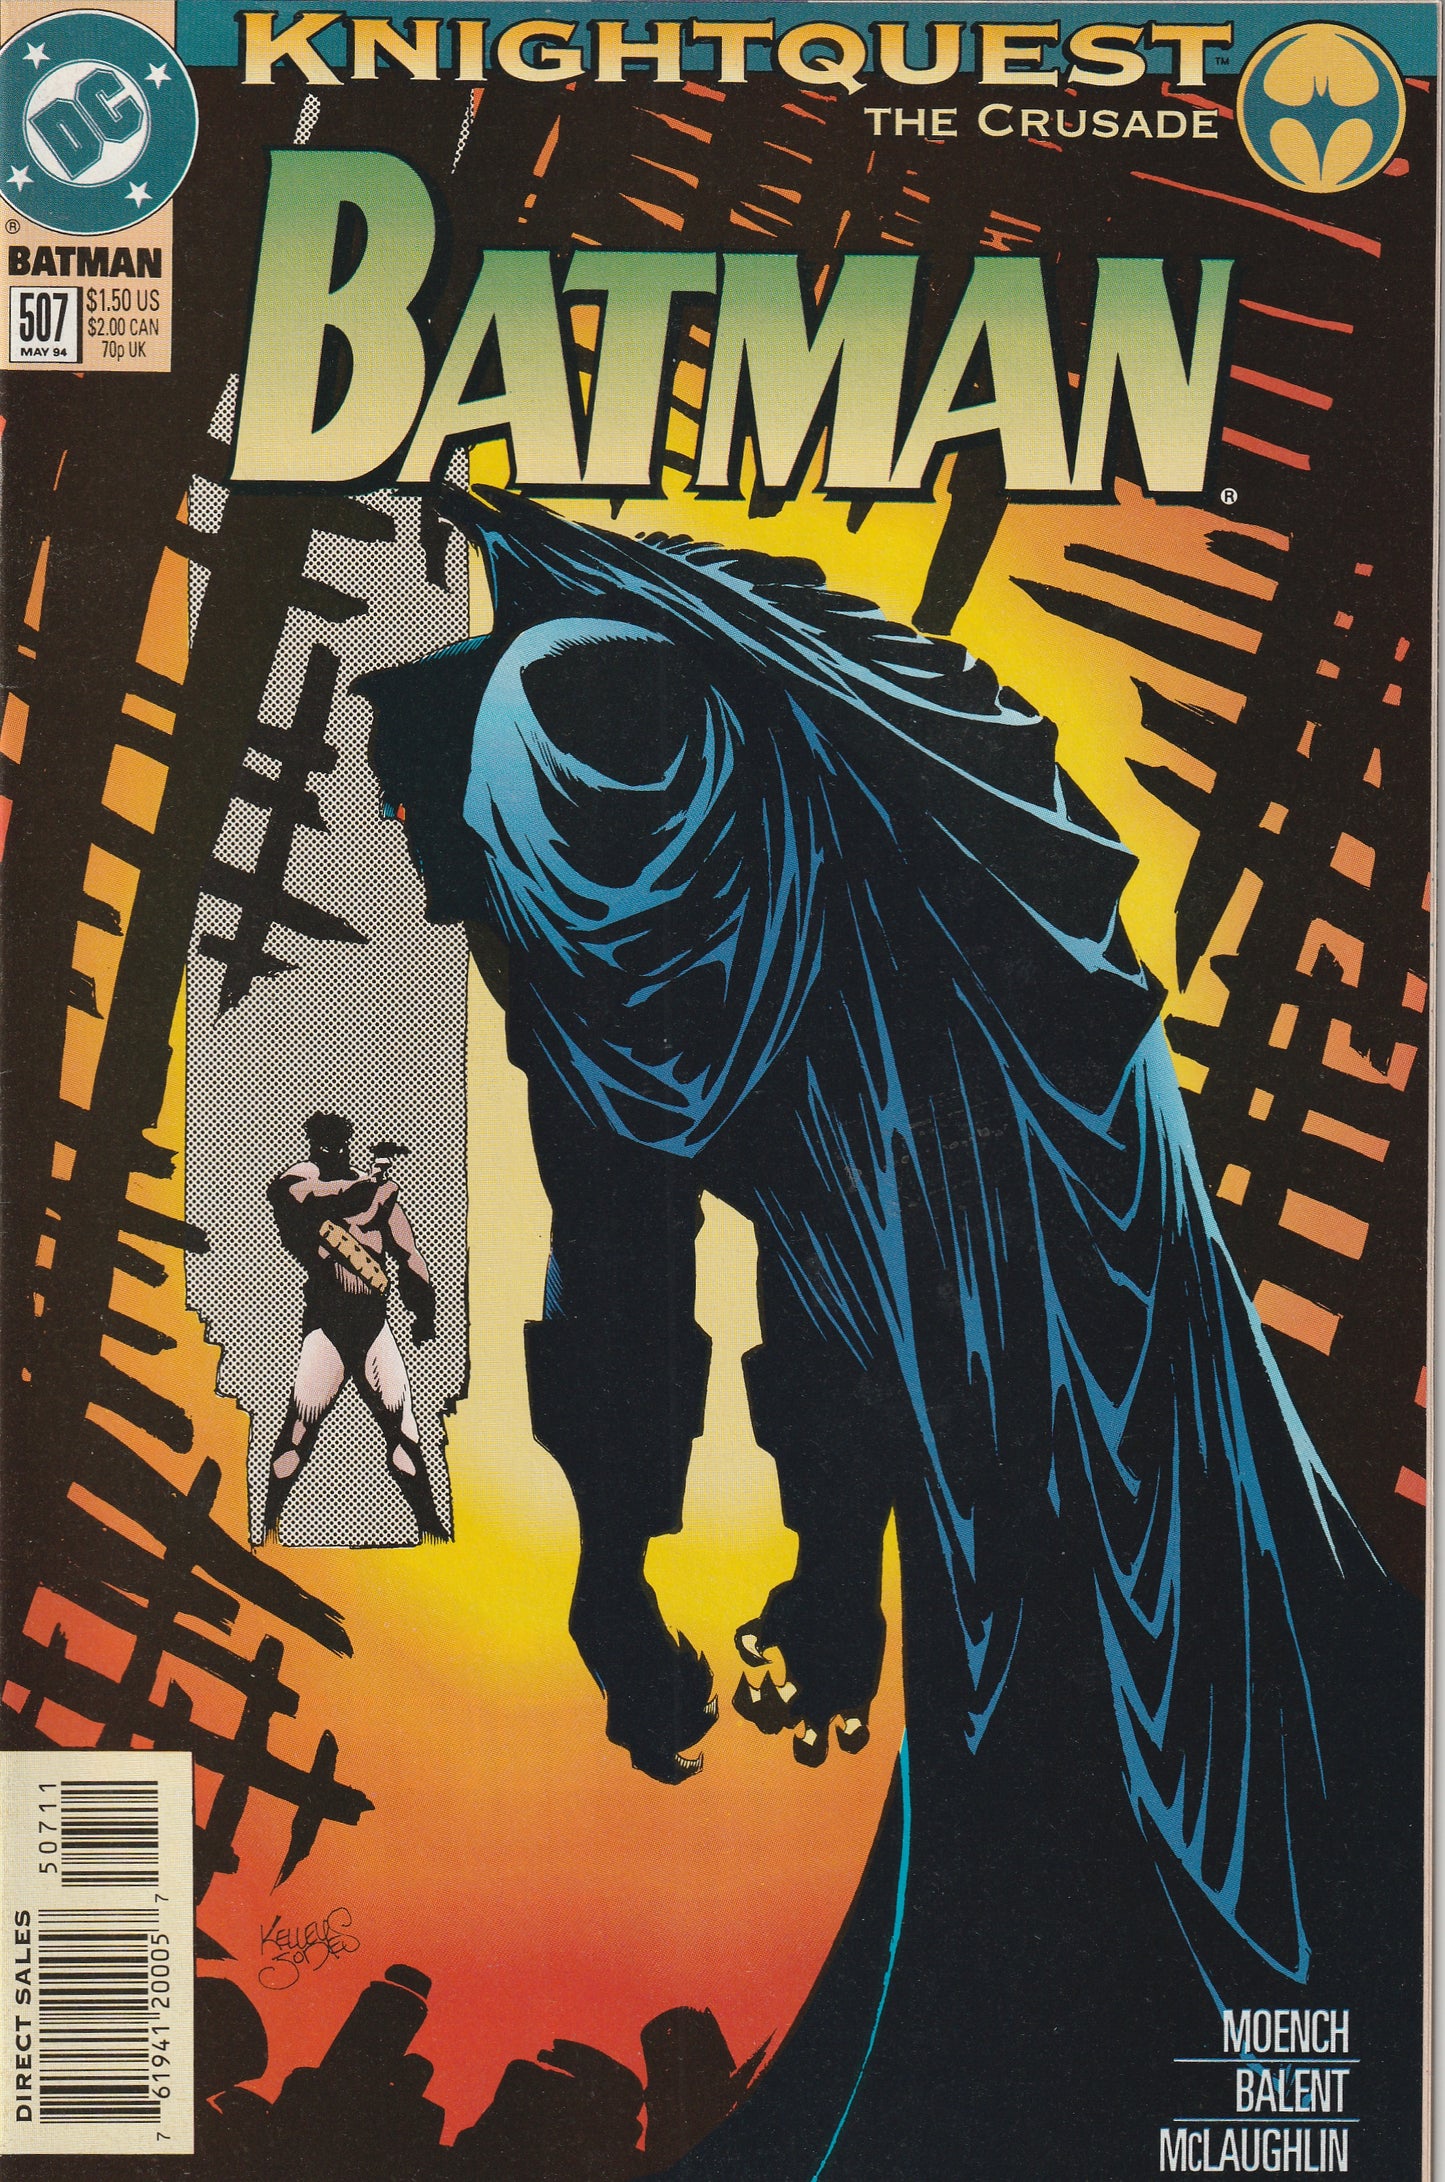 Batman #507 (1994) - Knightquest: The Crusade